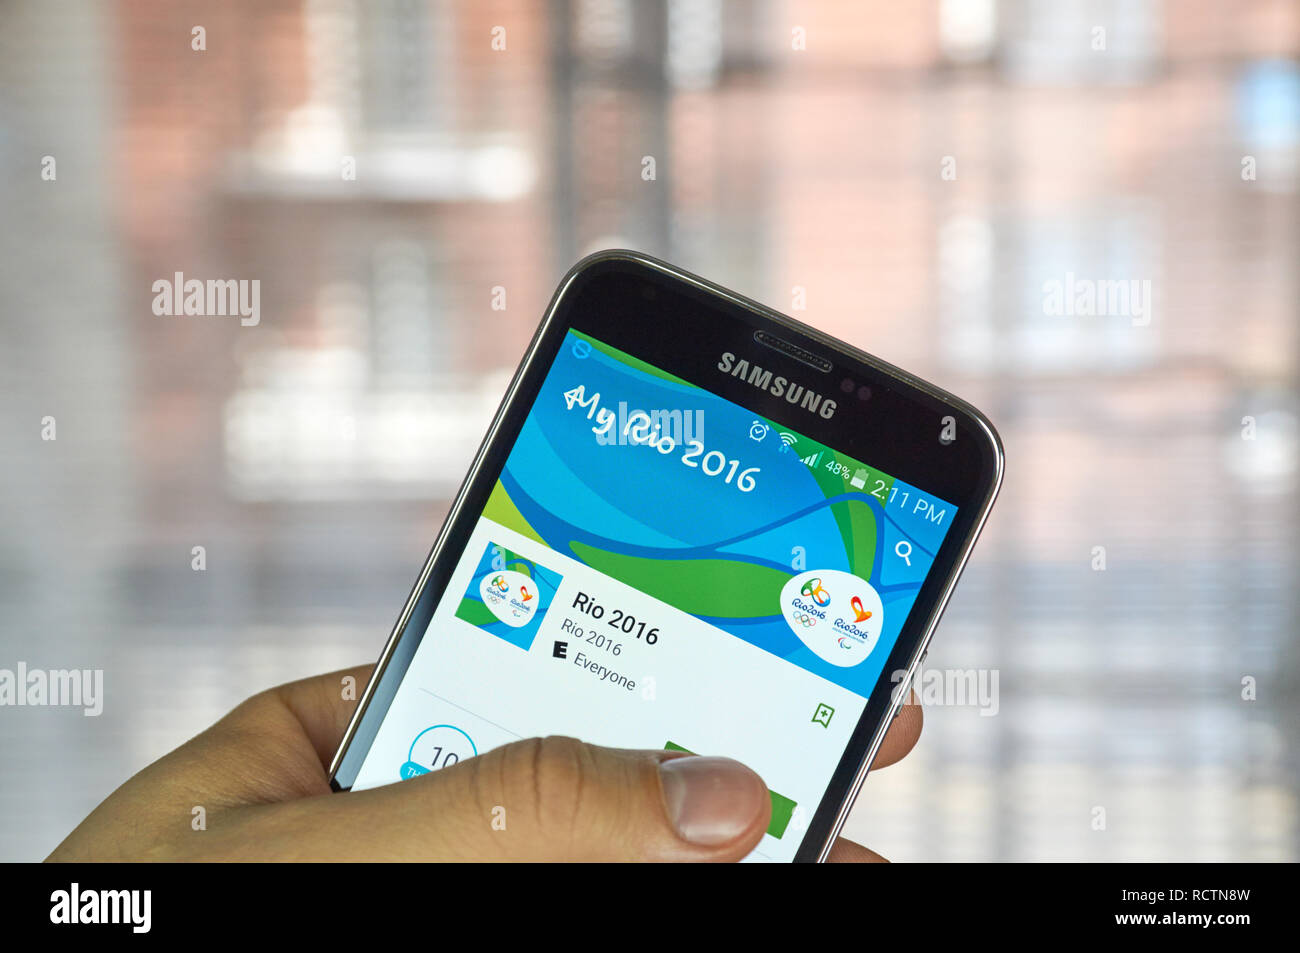 MONTREAL, KANADA - MÄRZ 20, 2016 - Rio 2016 mobile Anwendung auf dem Bildschirm des Samsung S5. Die Stadt von Rio de Janeiro ist Gastgeber des G gewählt worden Stockfoto